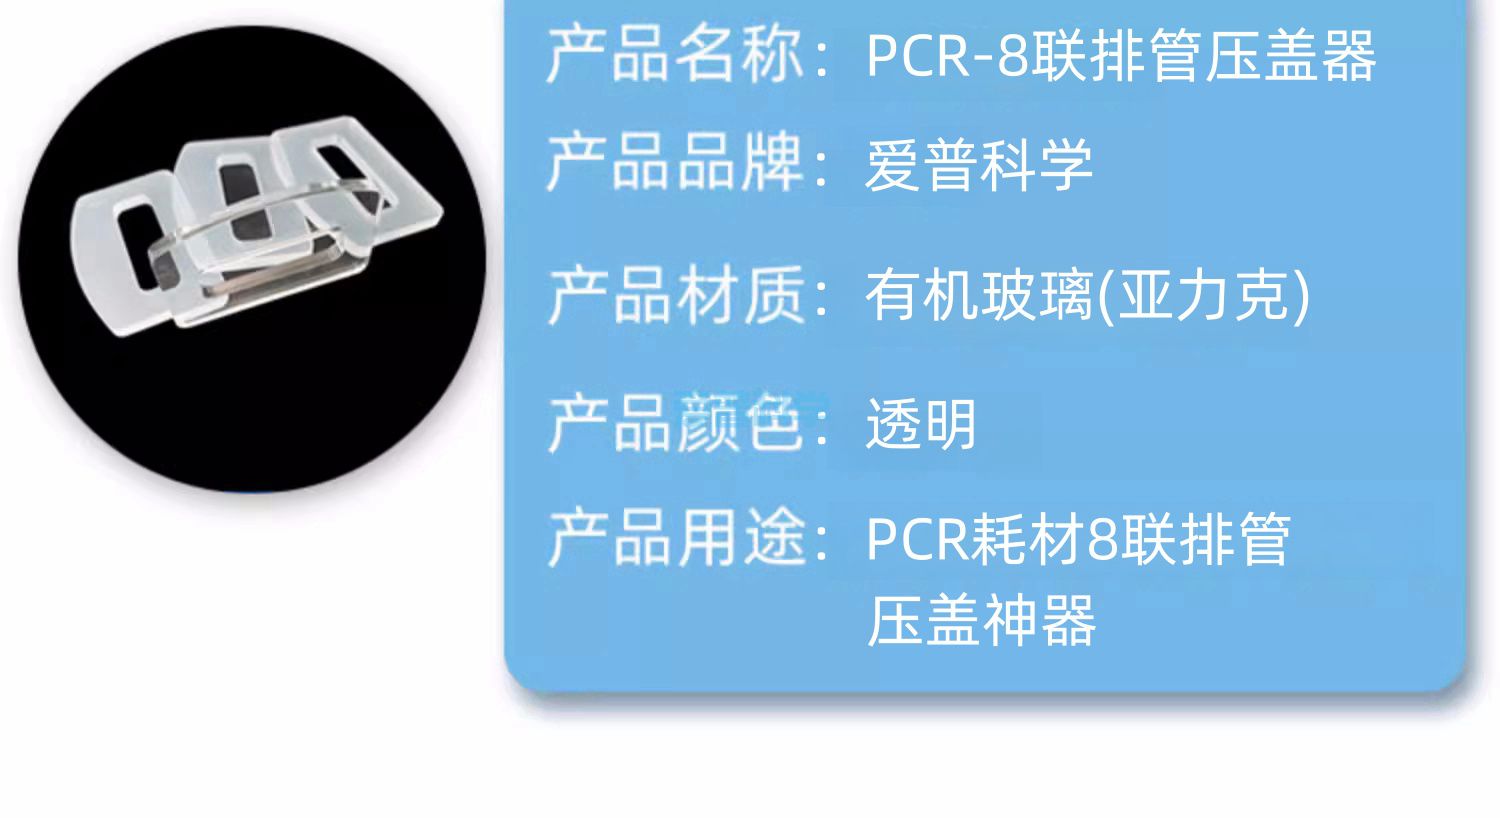 PCR-8联排管压盖器(图2)